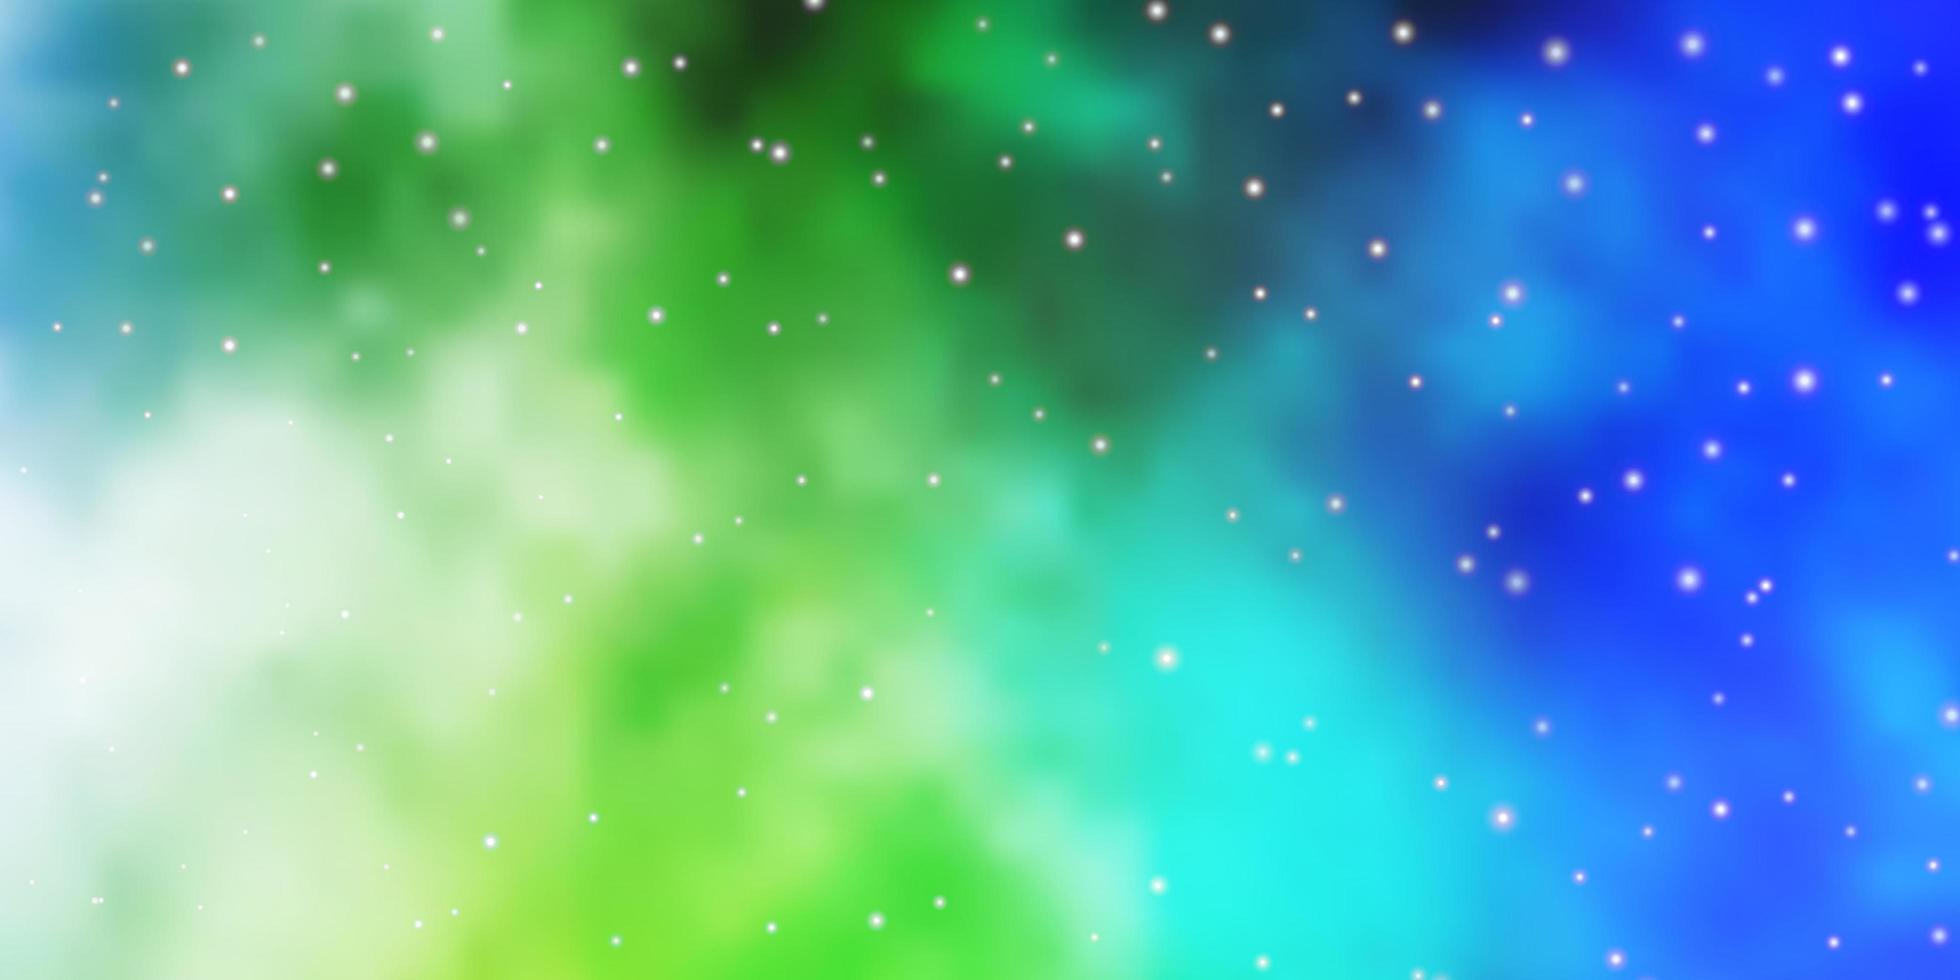 fond de vecteur vert bleu clair avec des étoiles colorées illustration abstraite géométrique moderne avec motif d'étoiles pour emballer des cadeaux